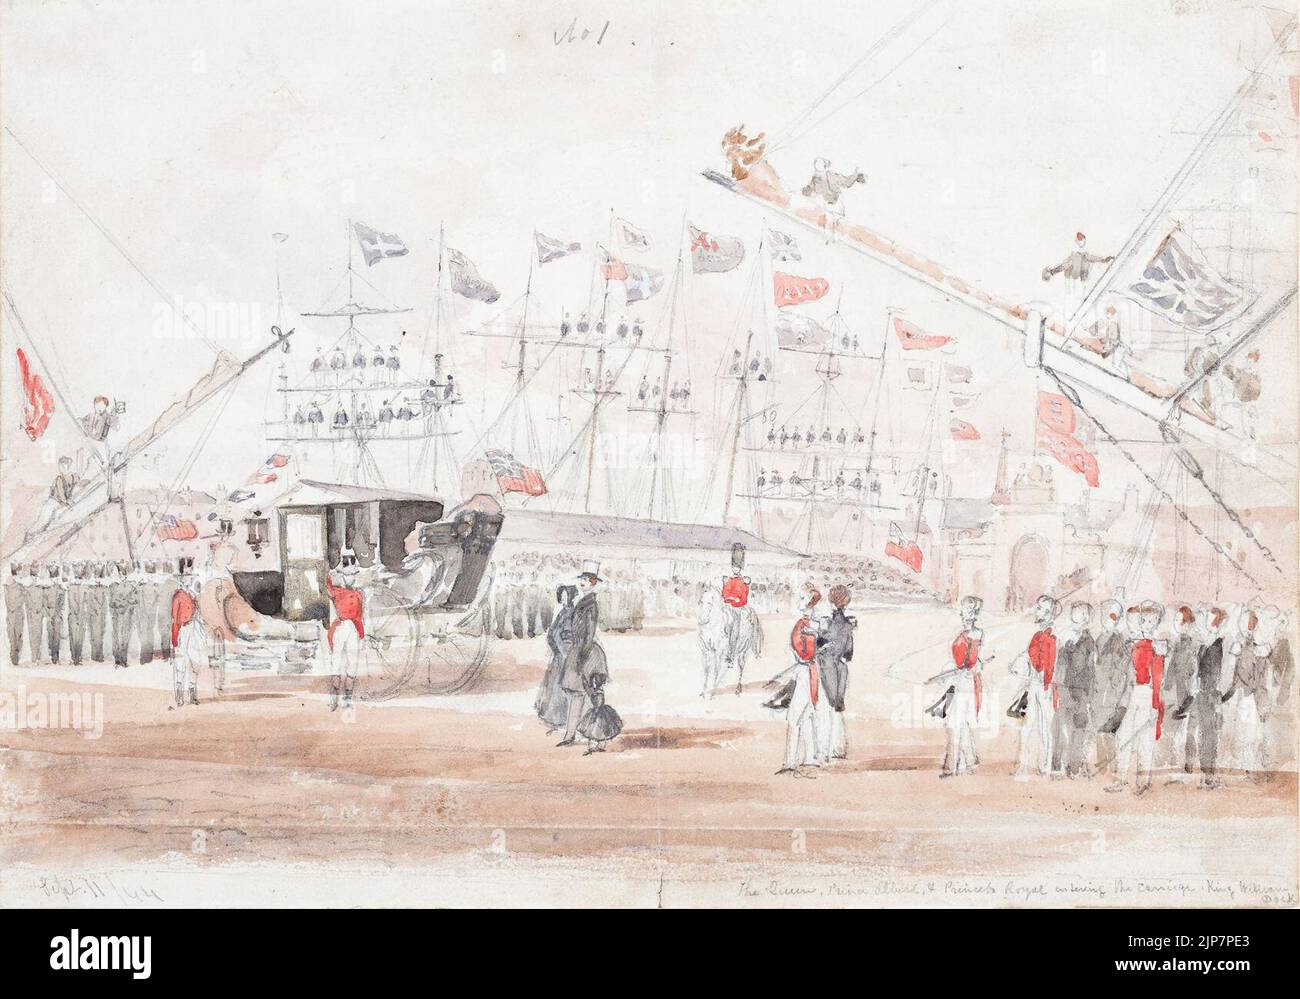 Die Königin, Prinz Albert und Prinzessin Royal beim Verlassen der Kutsche, König William Dock - Ebenezer Landells - 1844 Stockfoto